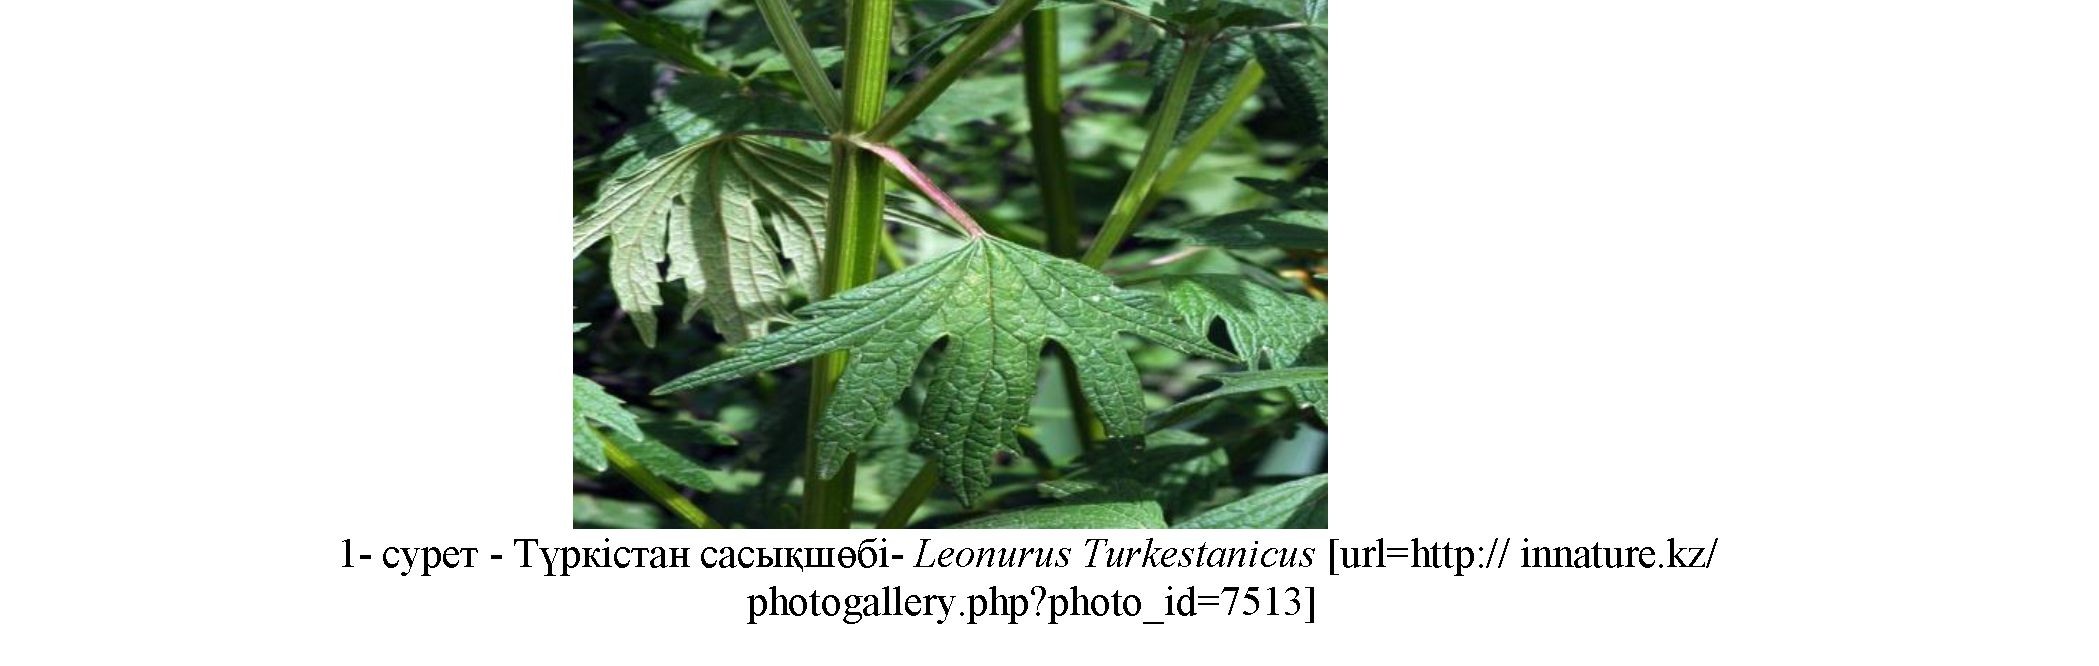 Оңтүстік Қазақстан флорасындағы leonurus turkestanicus өсімдігінің жер үсті бөлігін тауарлық талдау